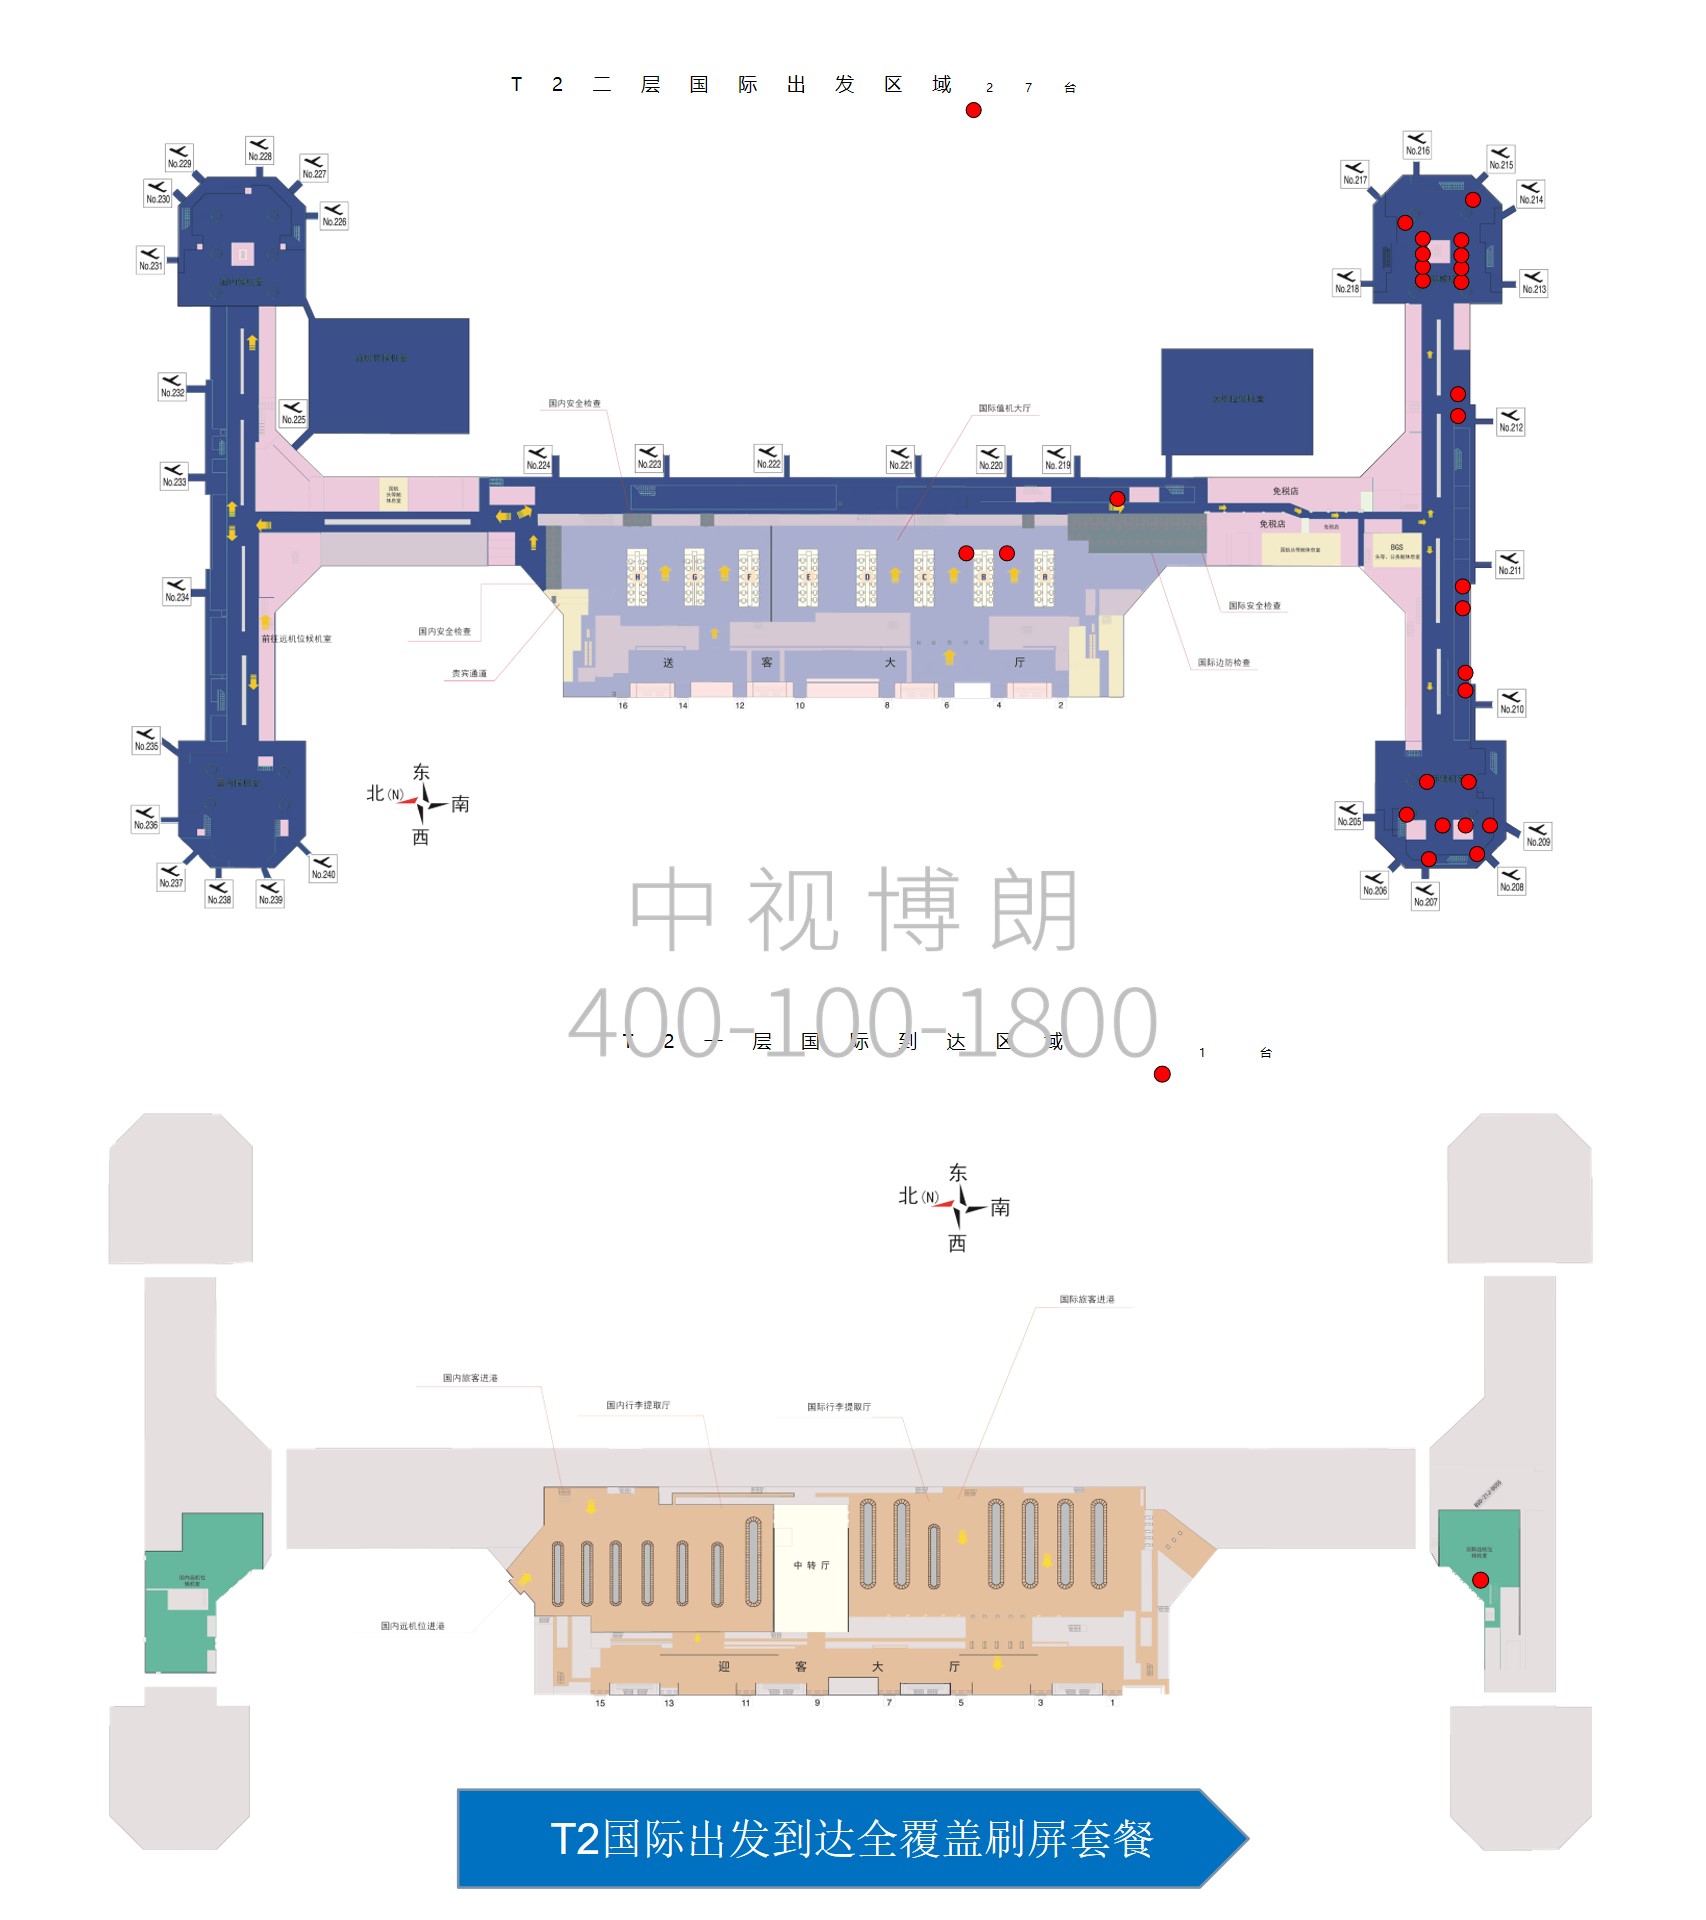 北京首都机场广告-T2 International Departure Arrival Full Coverage Swipe Screen Package位置图